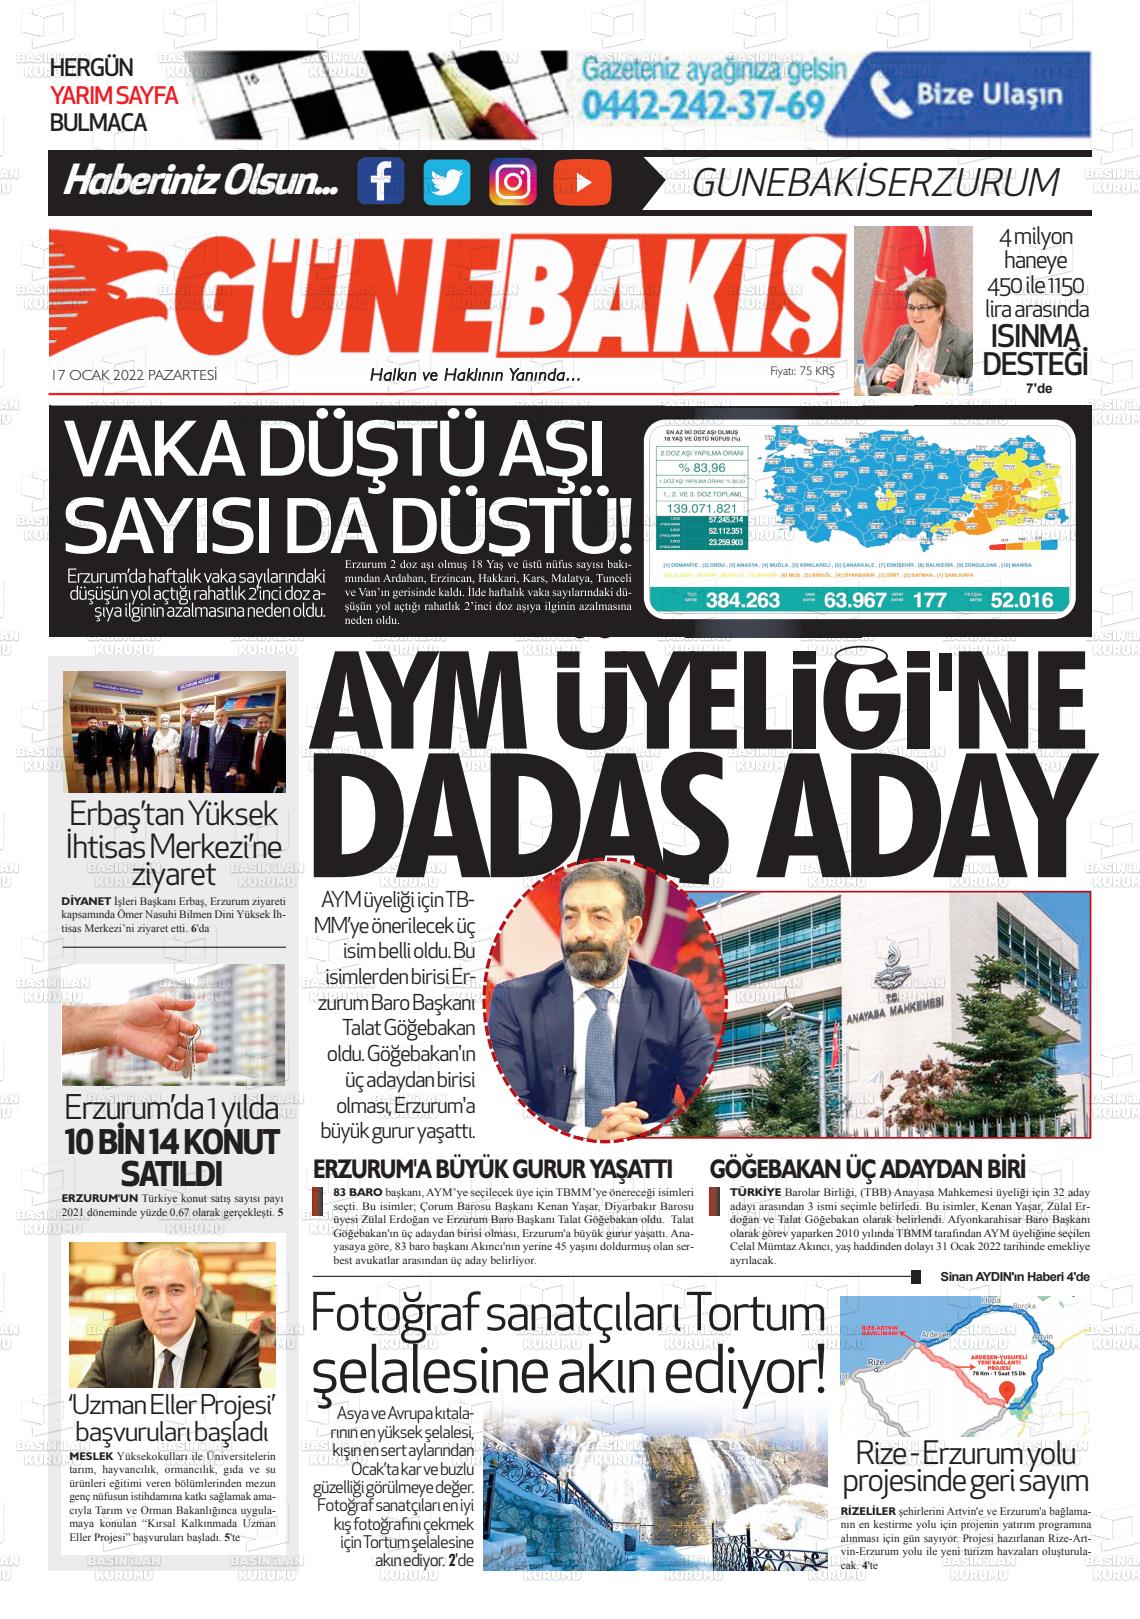 17 Ocak 2022 Erzurum Günebakış Gazete Manşeti